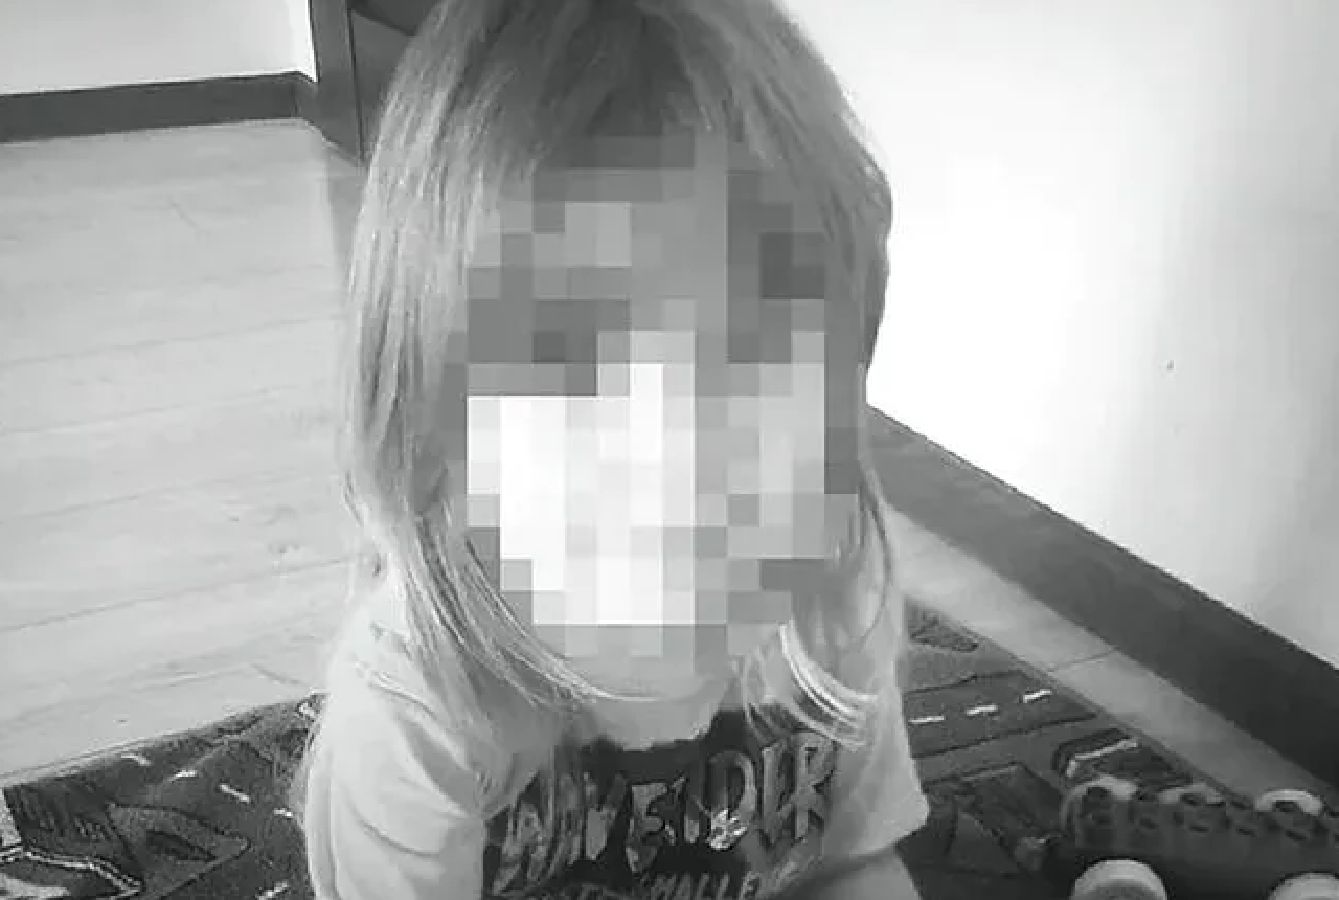 3-letnia Hania skatowana na śmierć. Rodzice awanturują się w sądzie